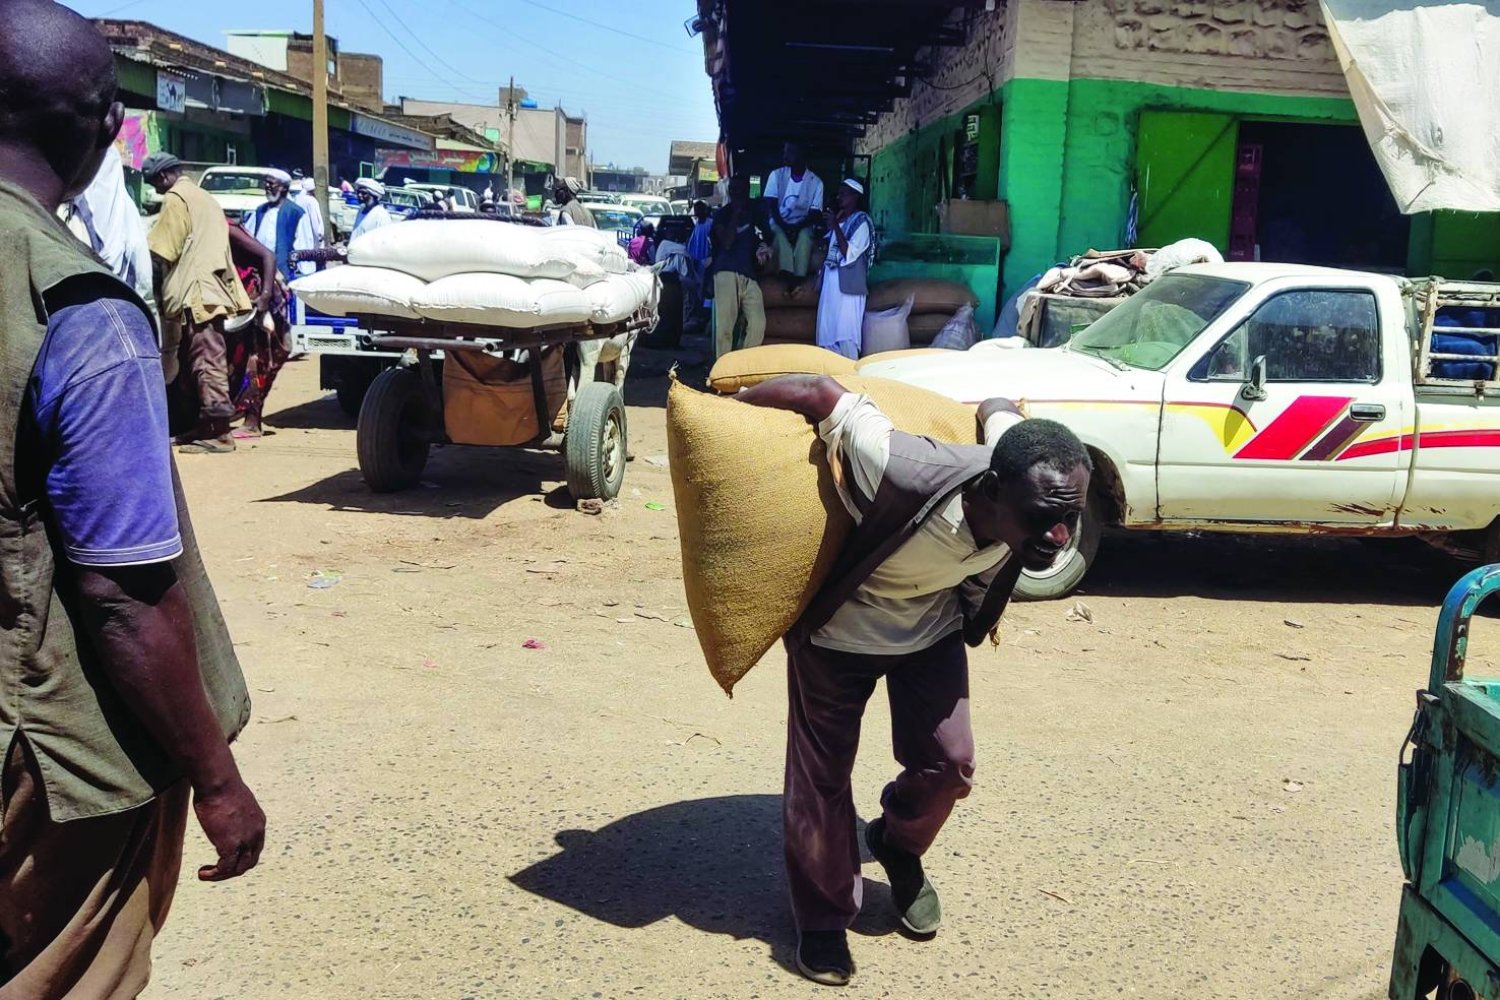 
سوداني يحمل كيساً من الحبوب يوم الأربعاء في مدينة القضارف شرق السودان (أ.ف.ب)